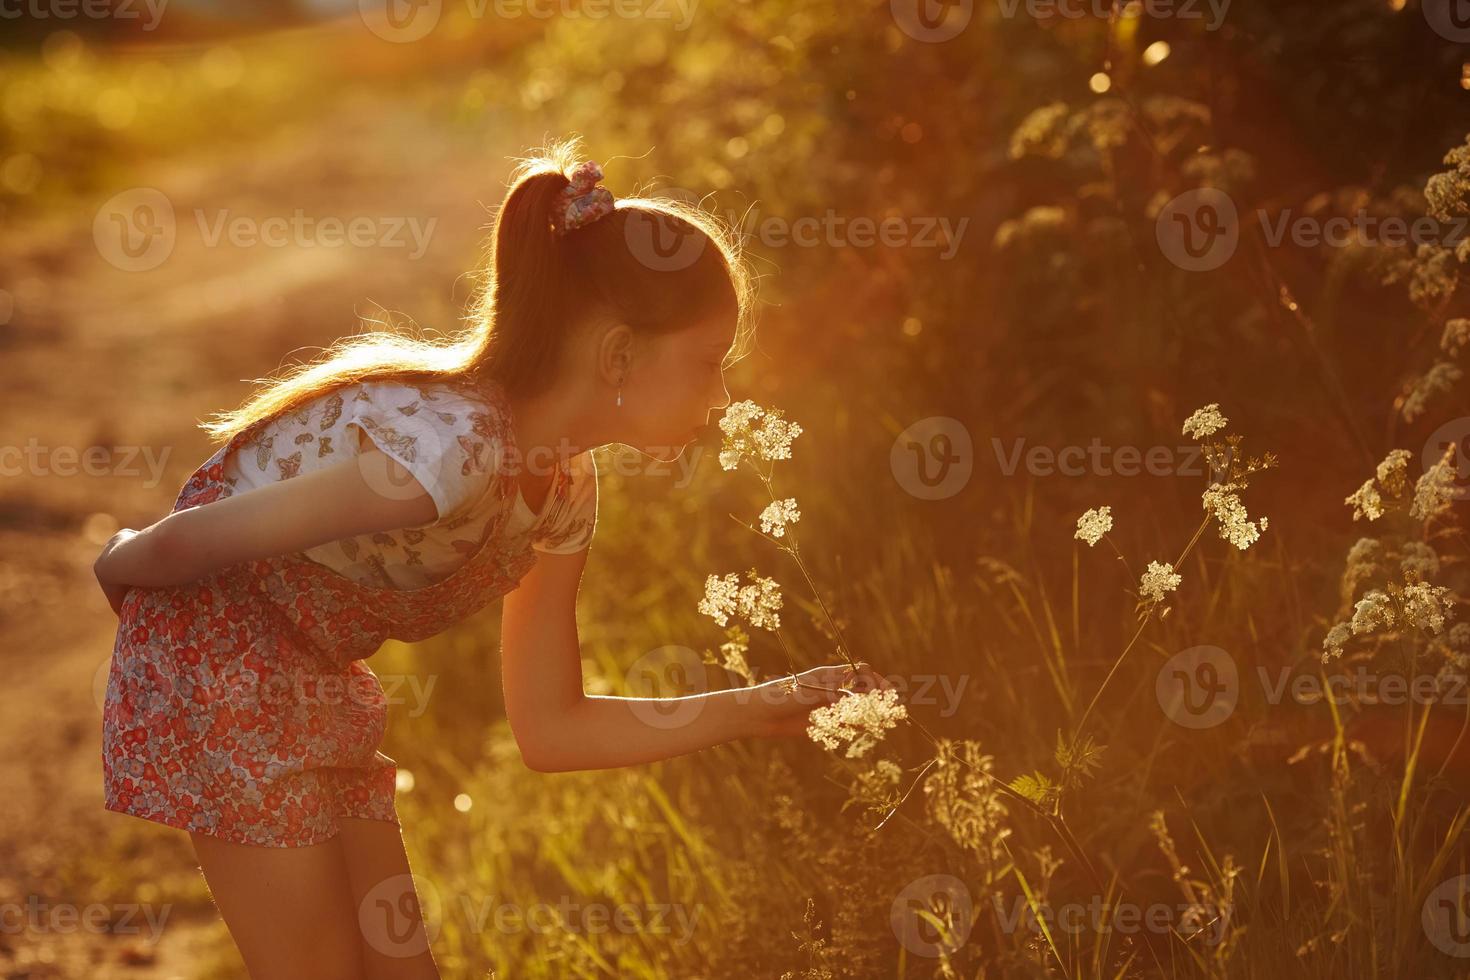 menina cheirando uma flor silvestre foto